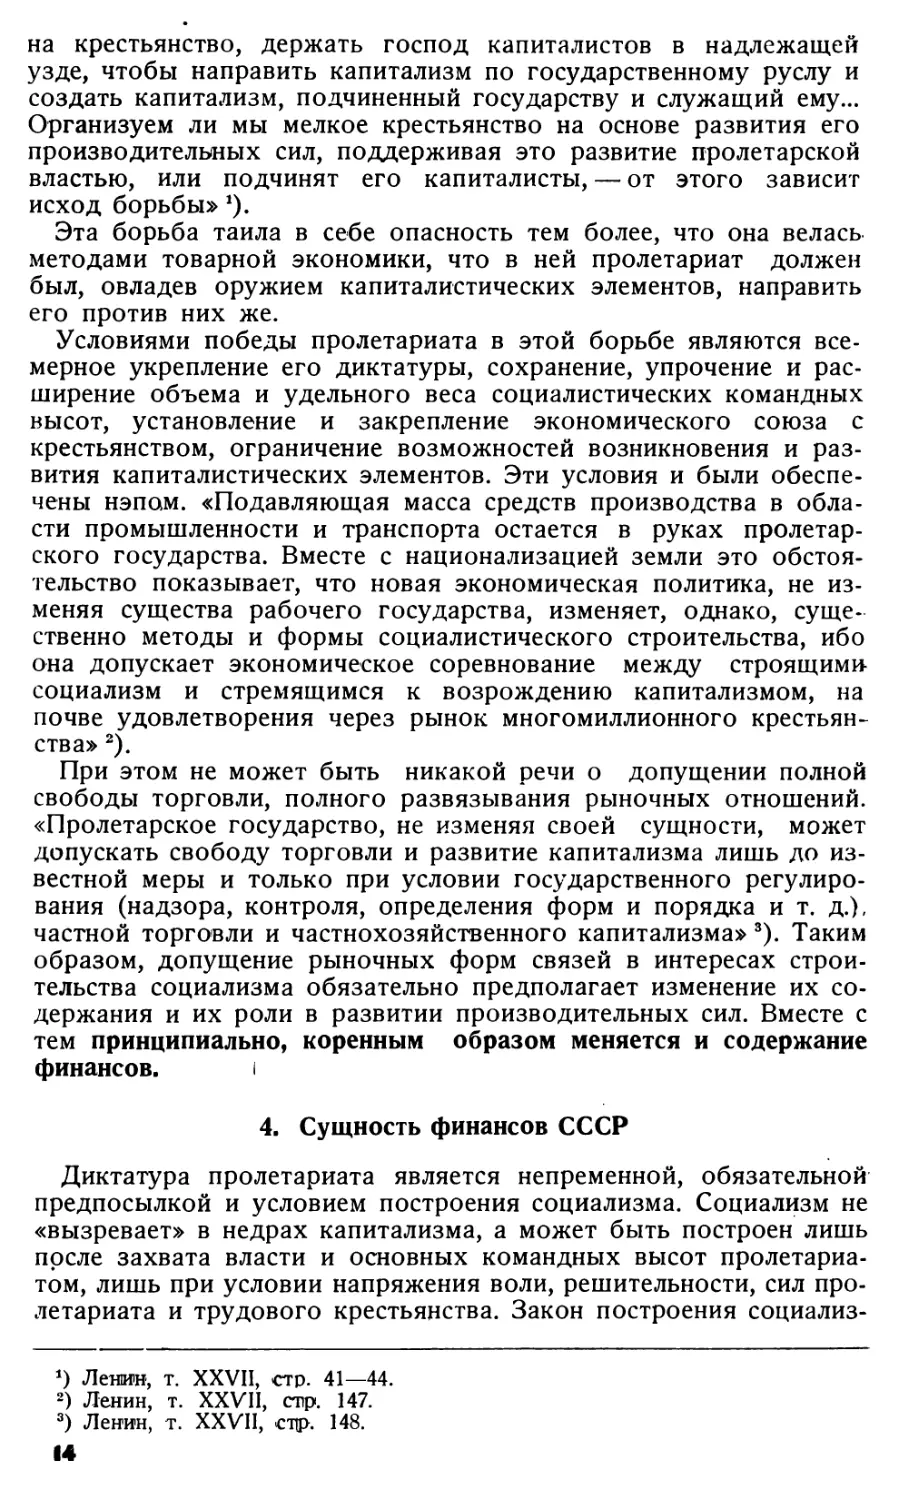 4. Сущность финансов СССР